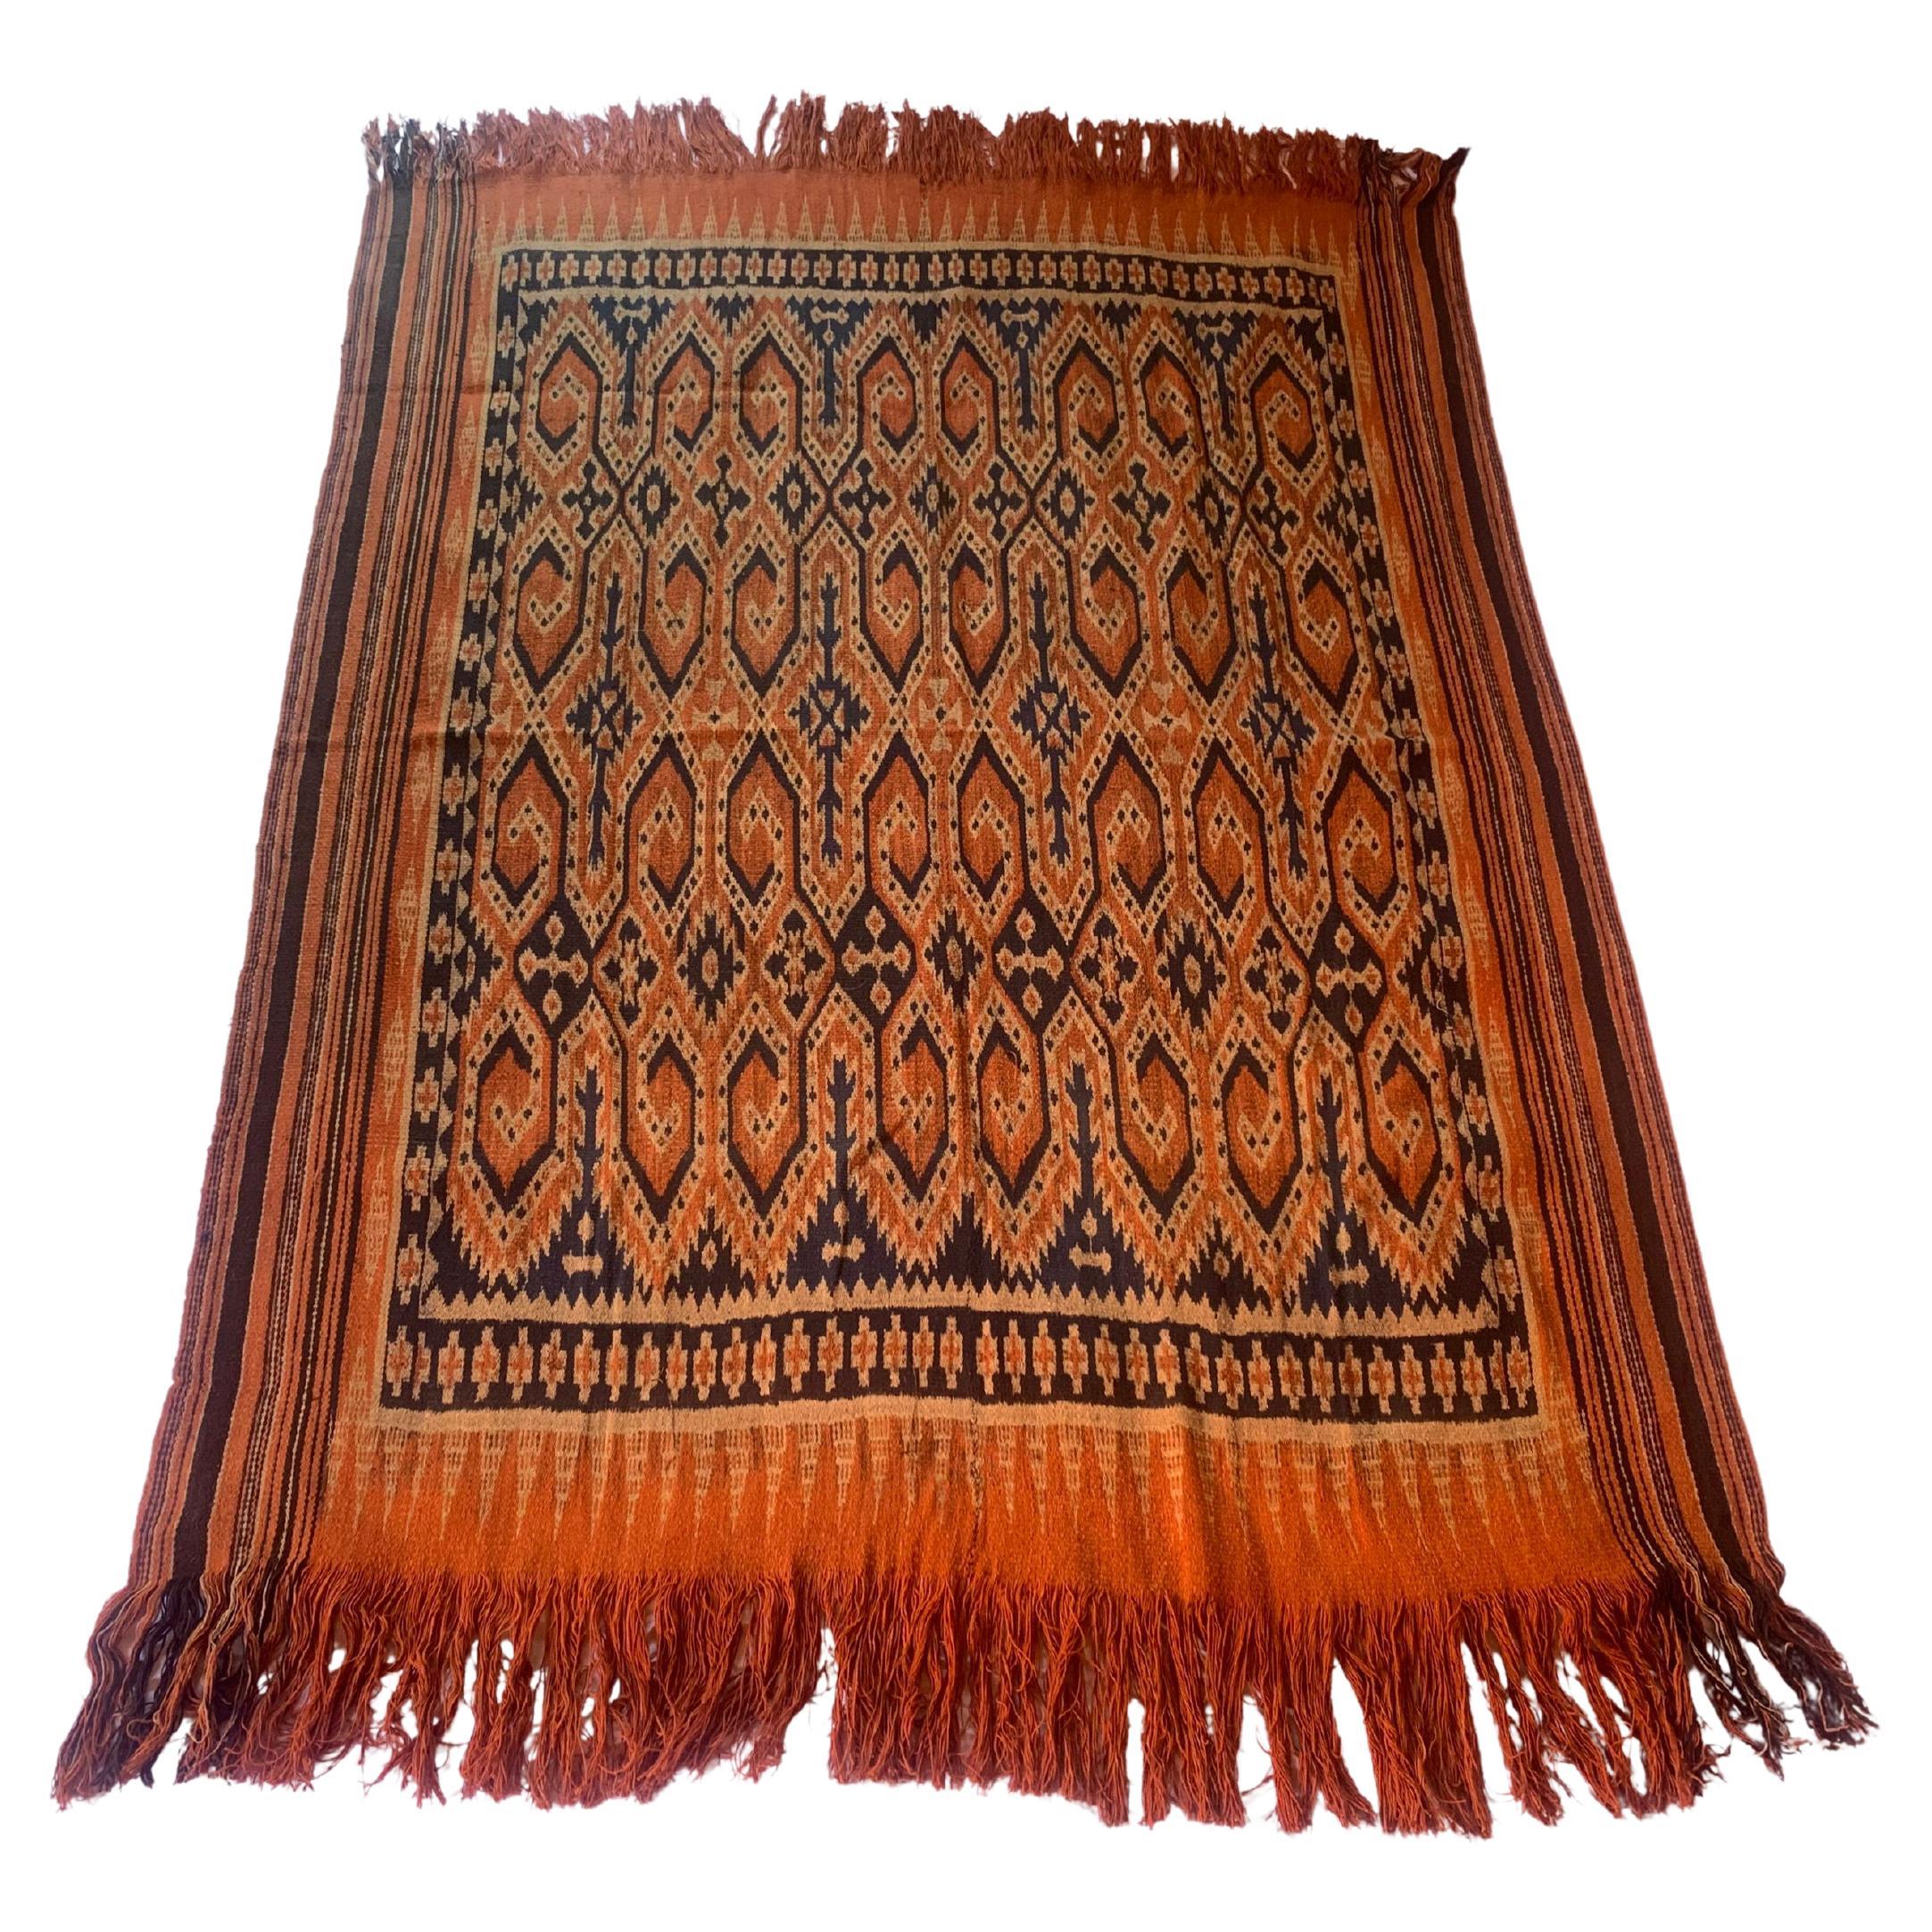 Textile Ikat de la tribu Toraja de Sulawesi avec de superbes motifs tribaux C.C. 1950